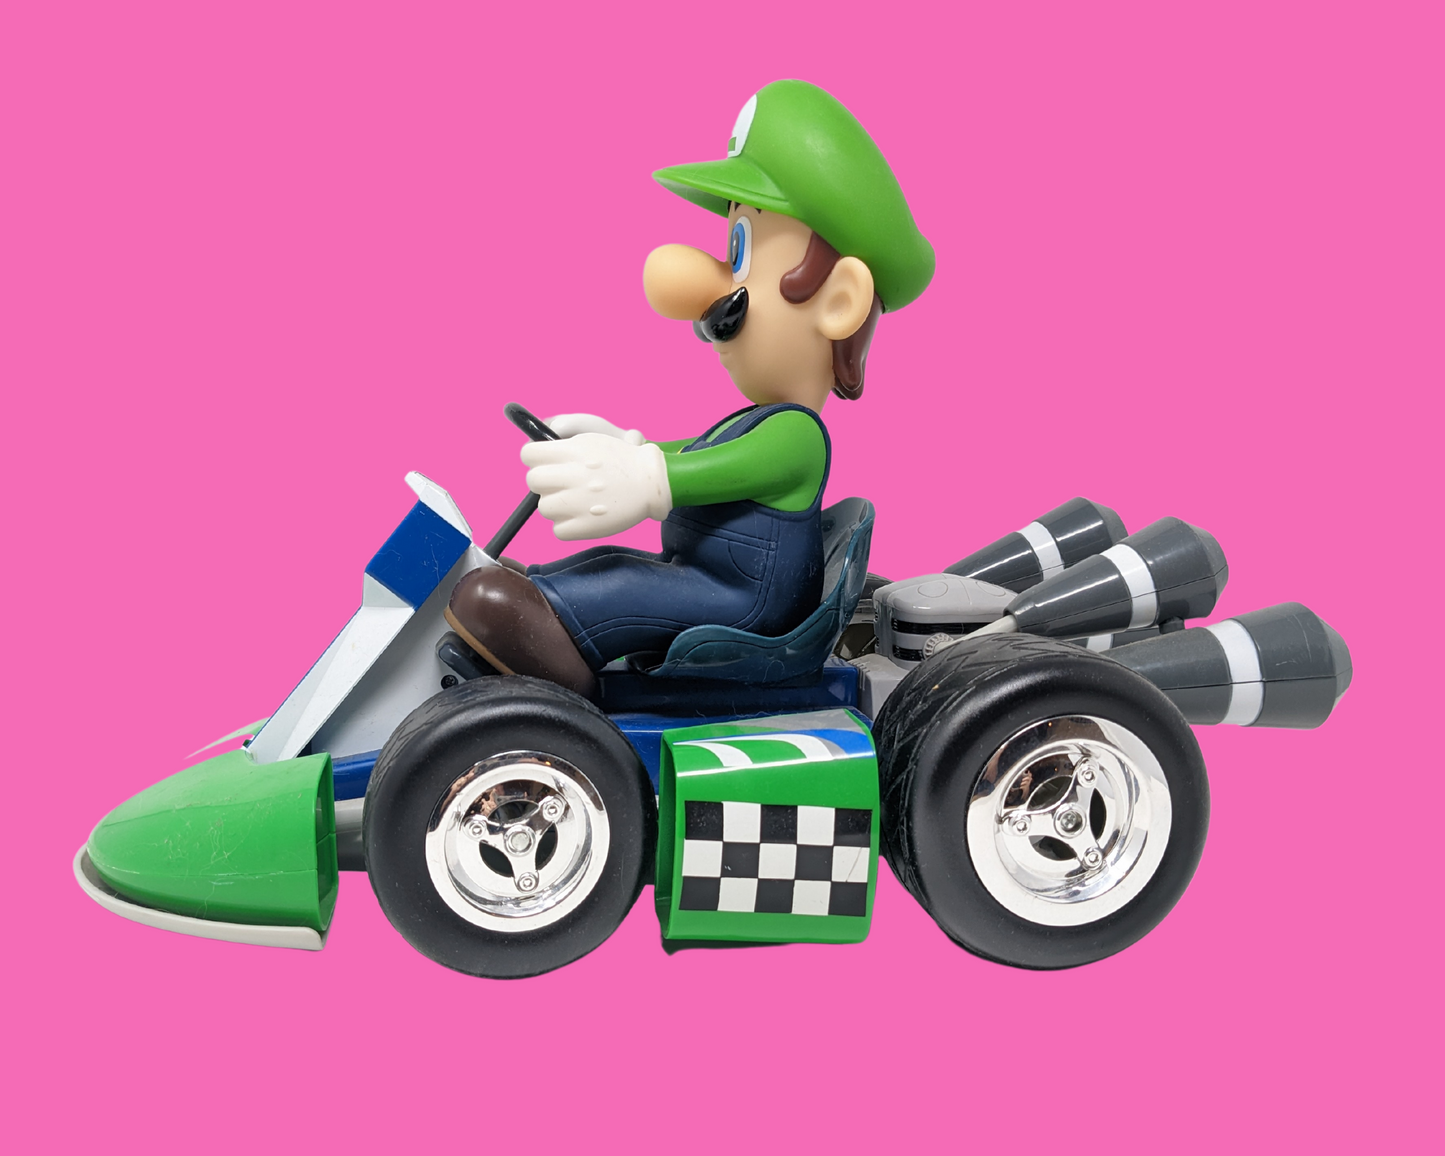 Nintendo Mario Kart Luigi Toy